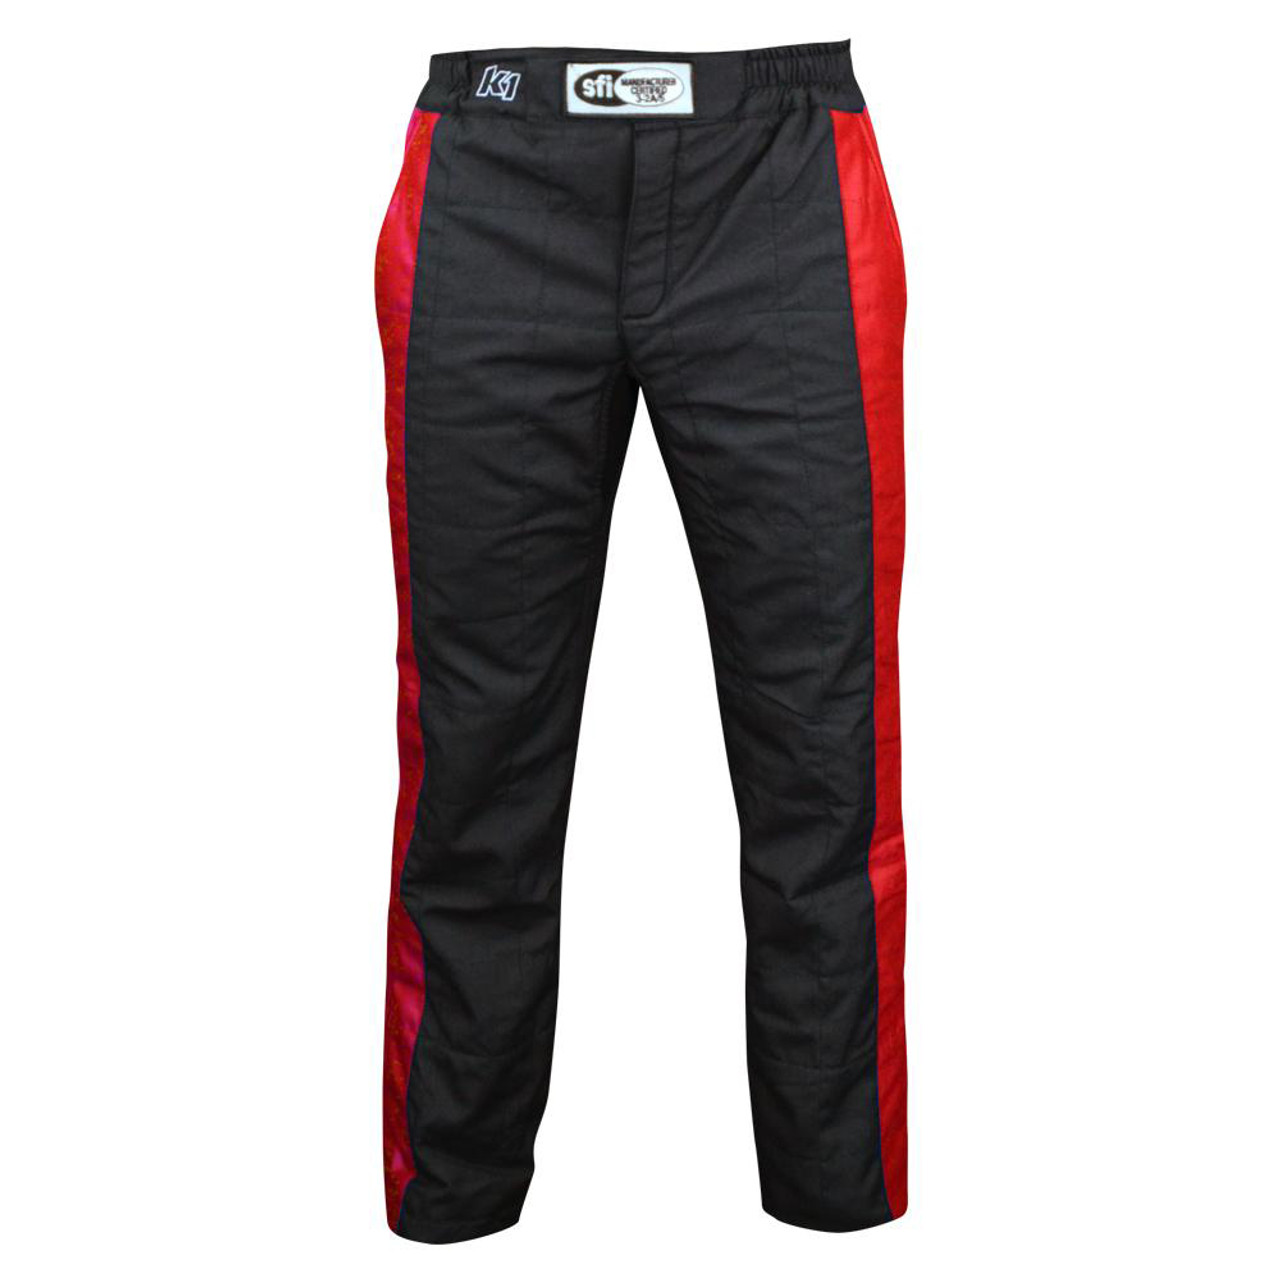 K1 Racegear Pant Sportsman Black / Red Large - K1R22-SPT-NR-L